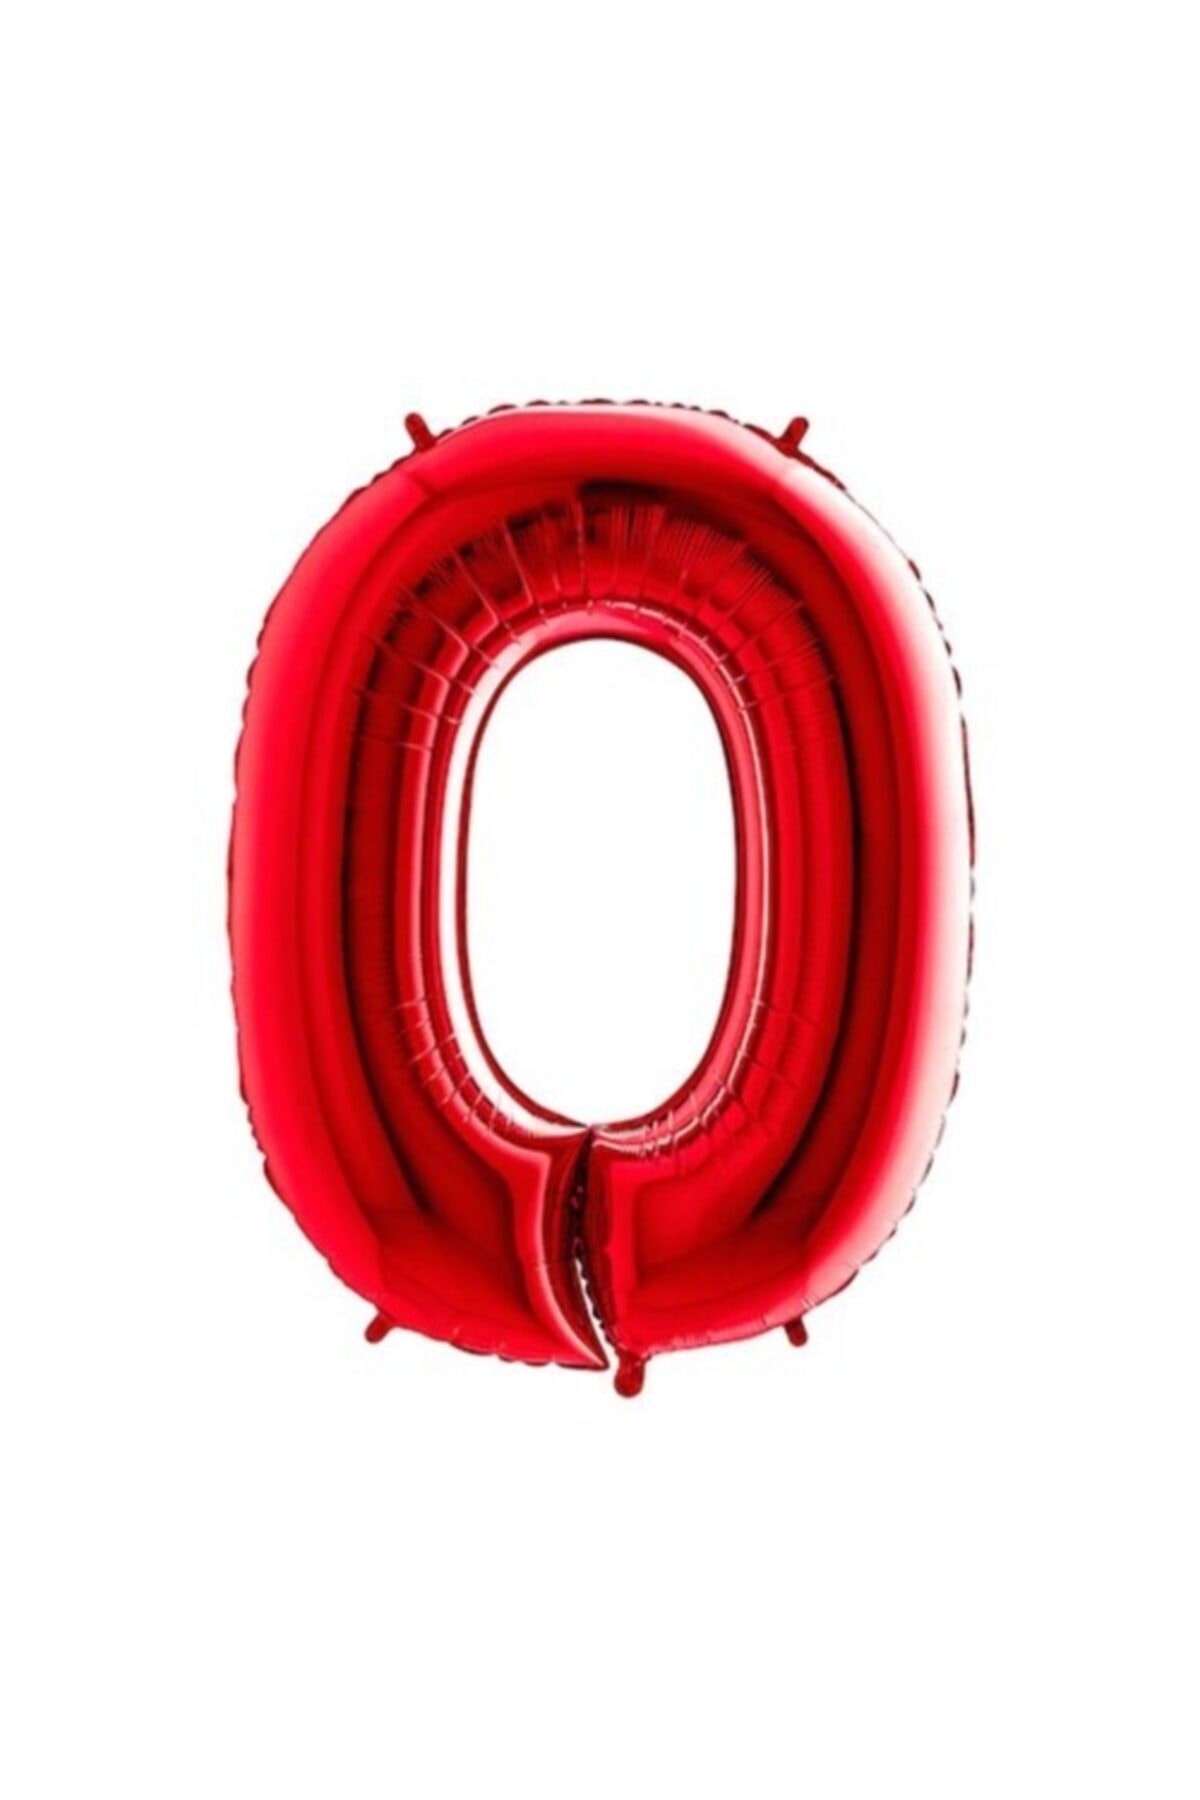 0 Rakam Kırmızı Renk Folyo Balon 40 Inç(100 Cm)